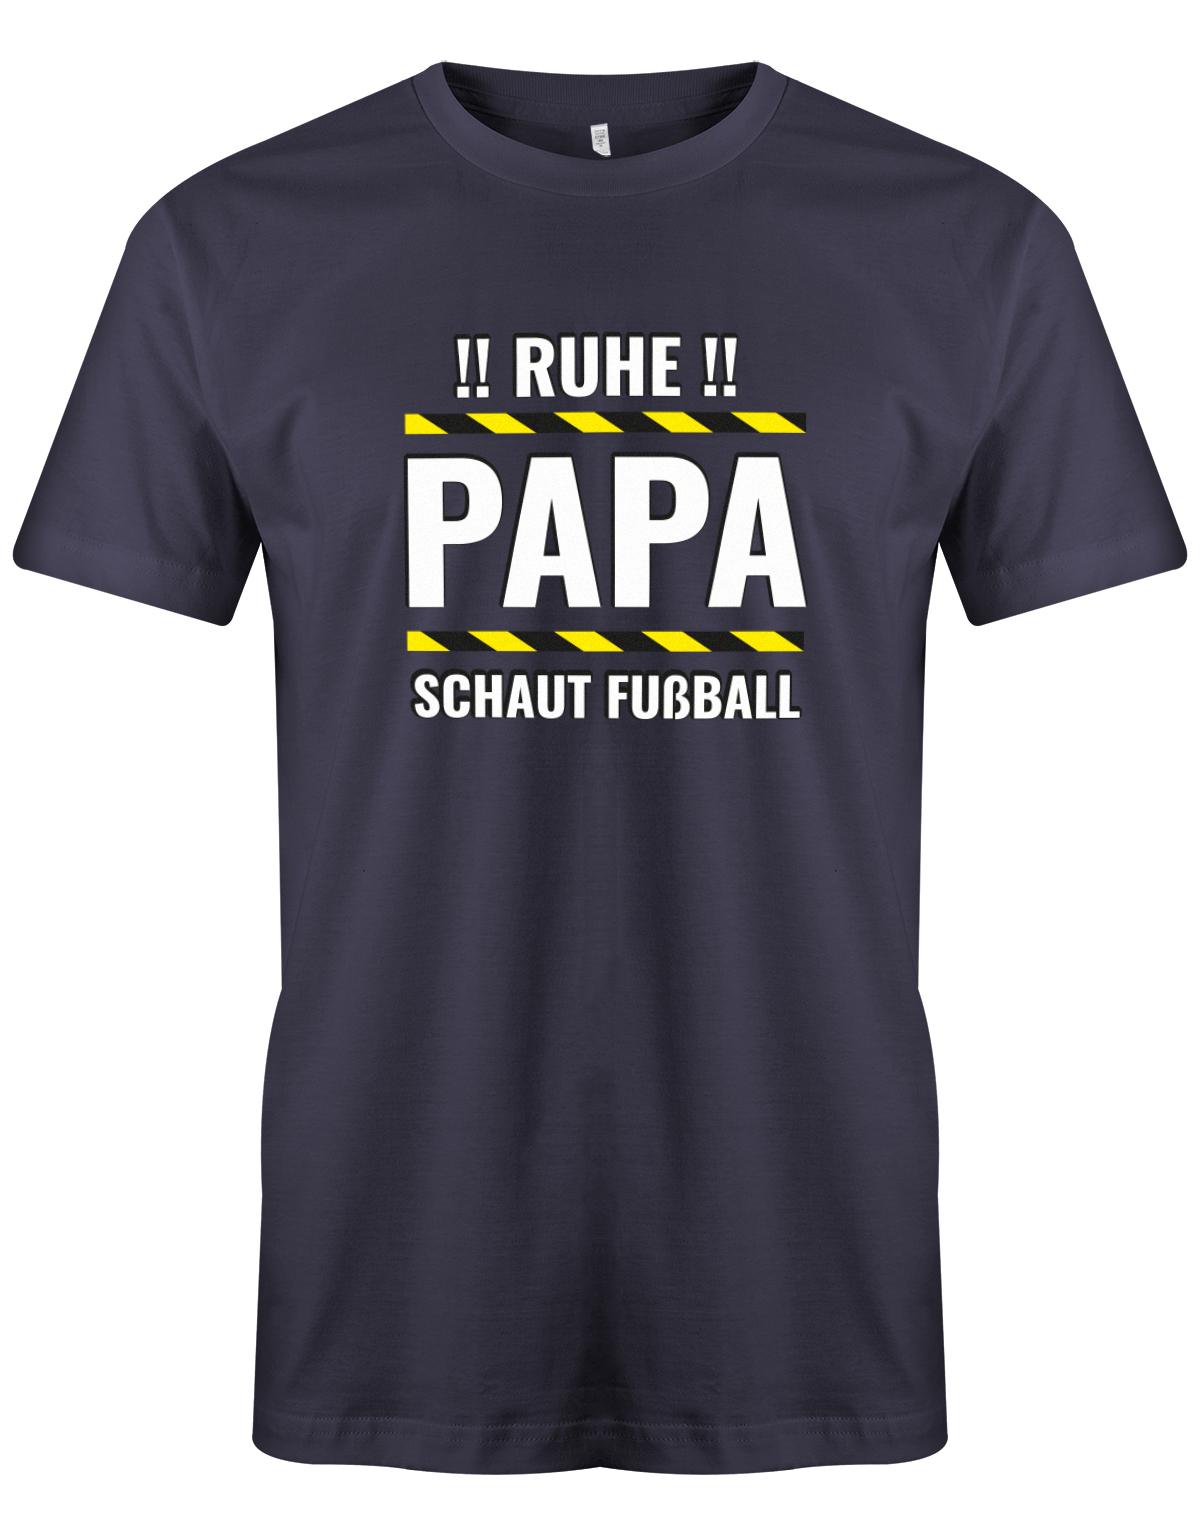 Ruhe-Papa-schaut-Fussball-Herren-Shirt-Navy